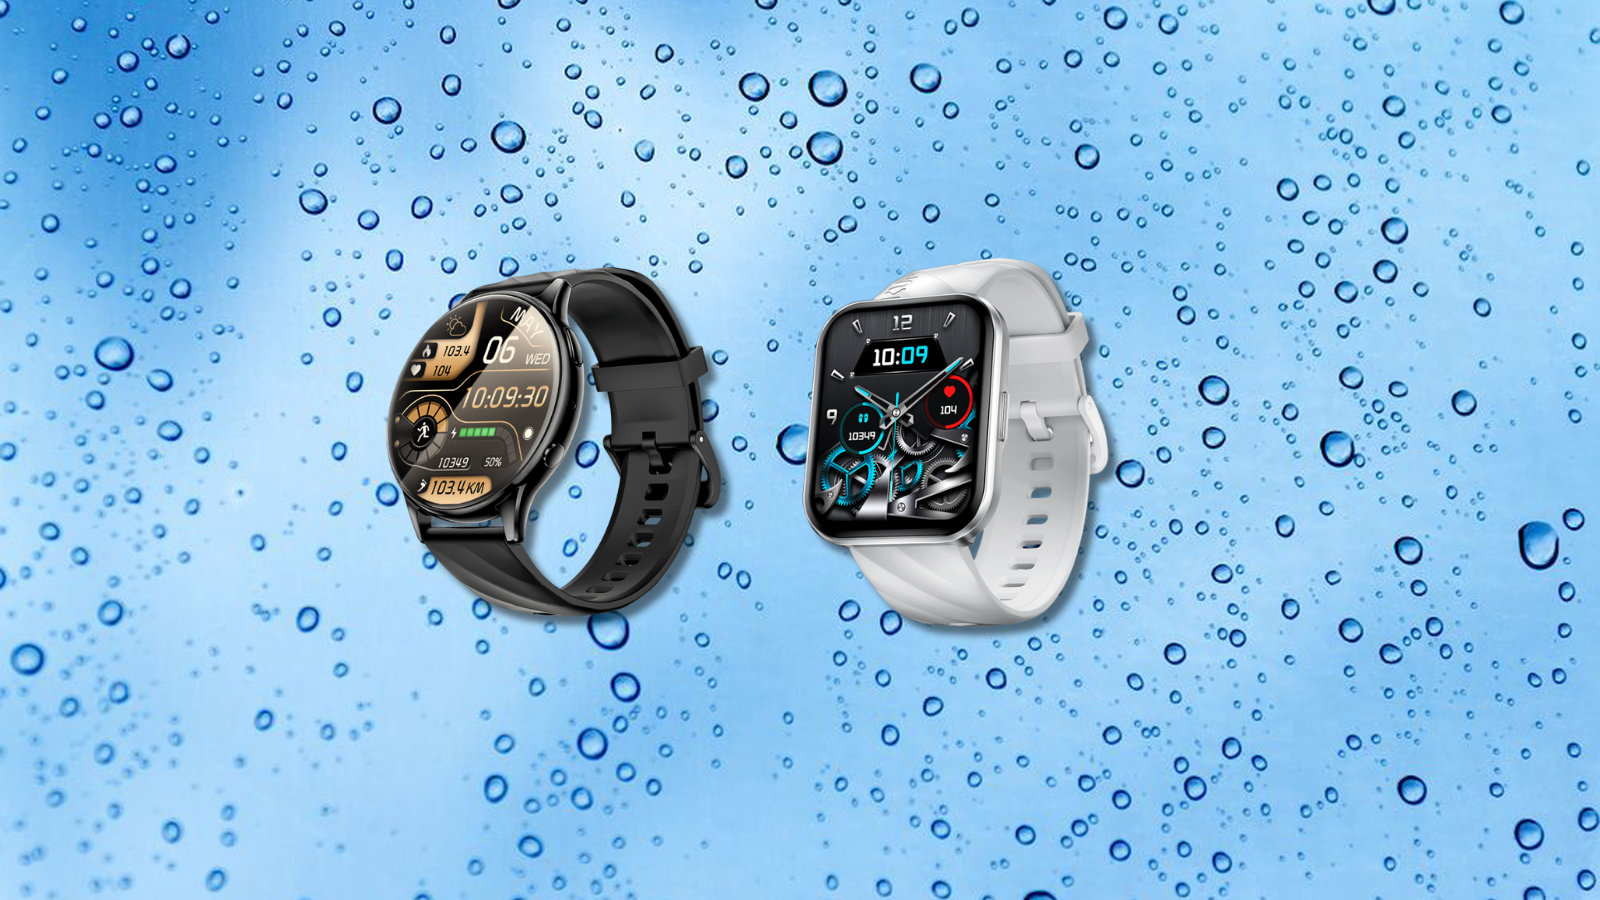 Kumi ku6 meta e gw5 o são novos smartwatches que custam menos de r$ 150. Kumi gw5 e o ku6 meta são duas opções de relógios inteligentes para quem não quer pagar muito